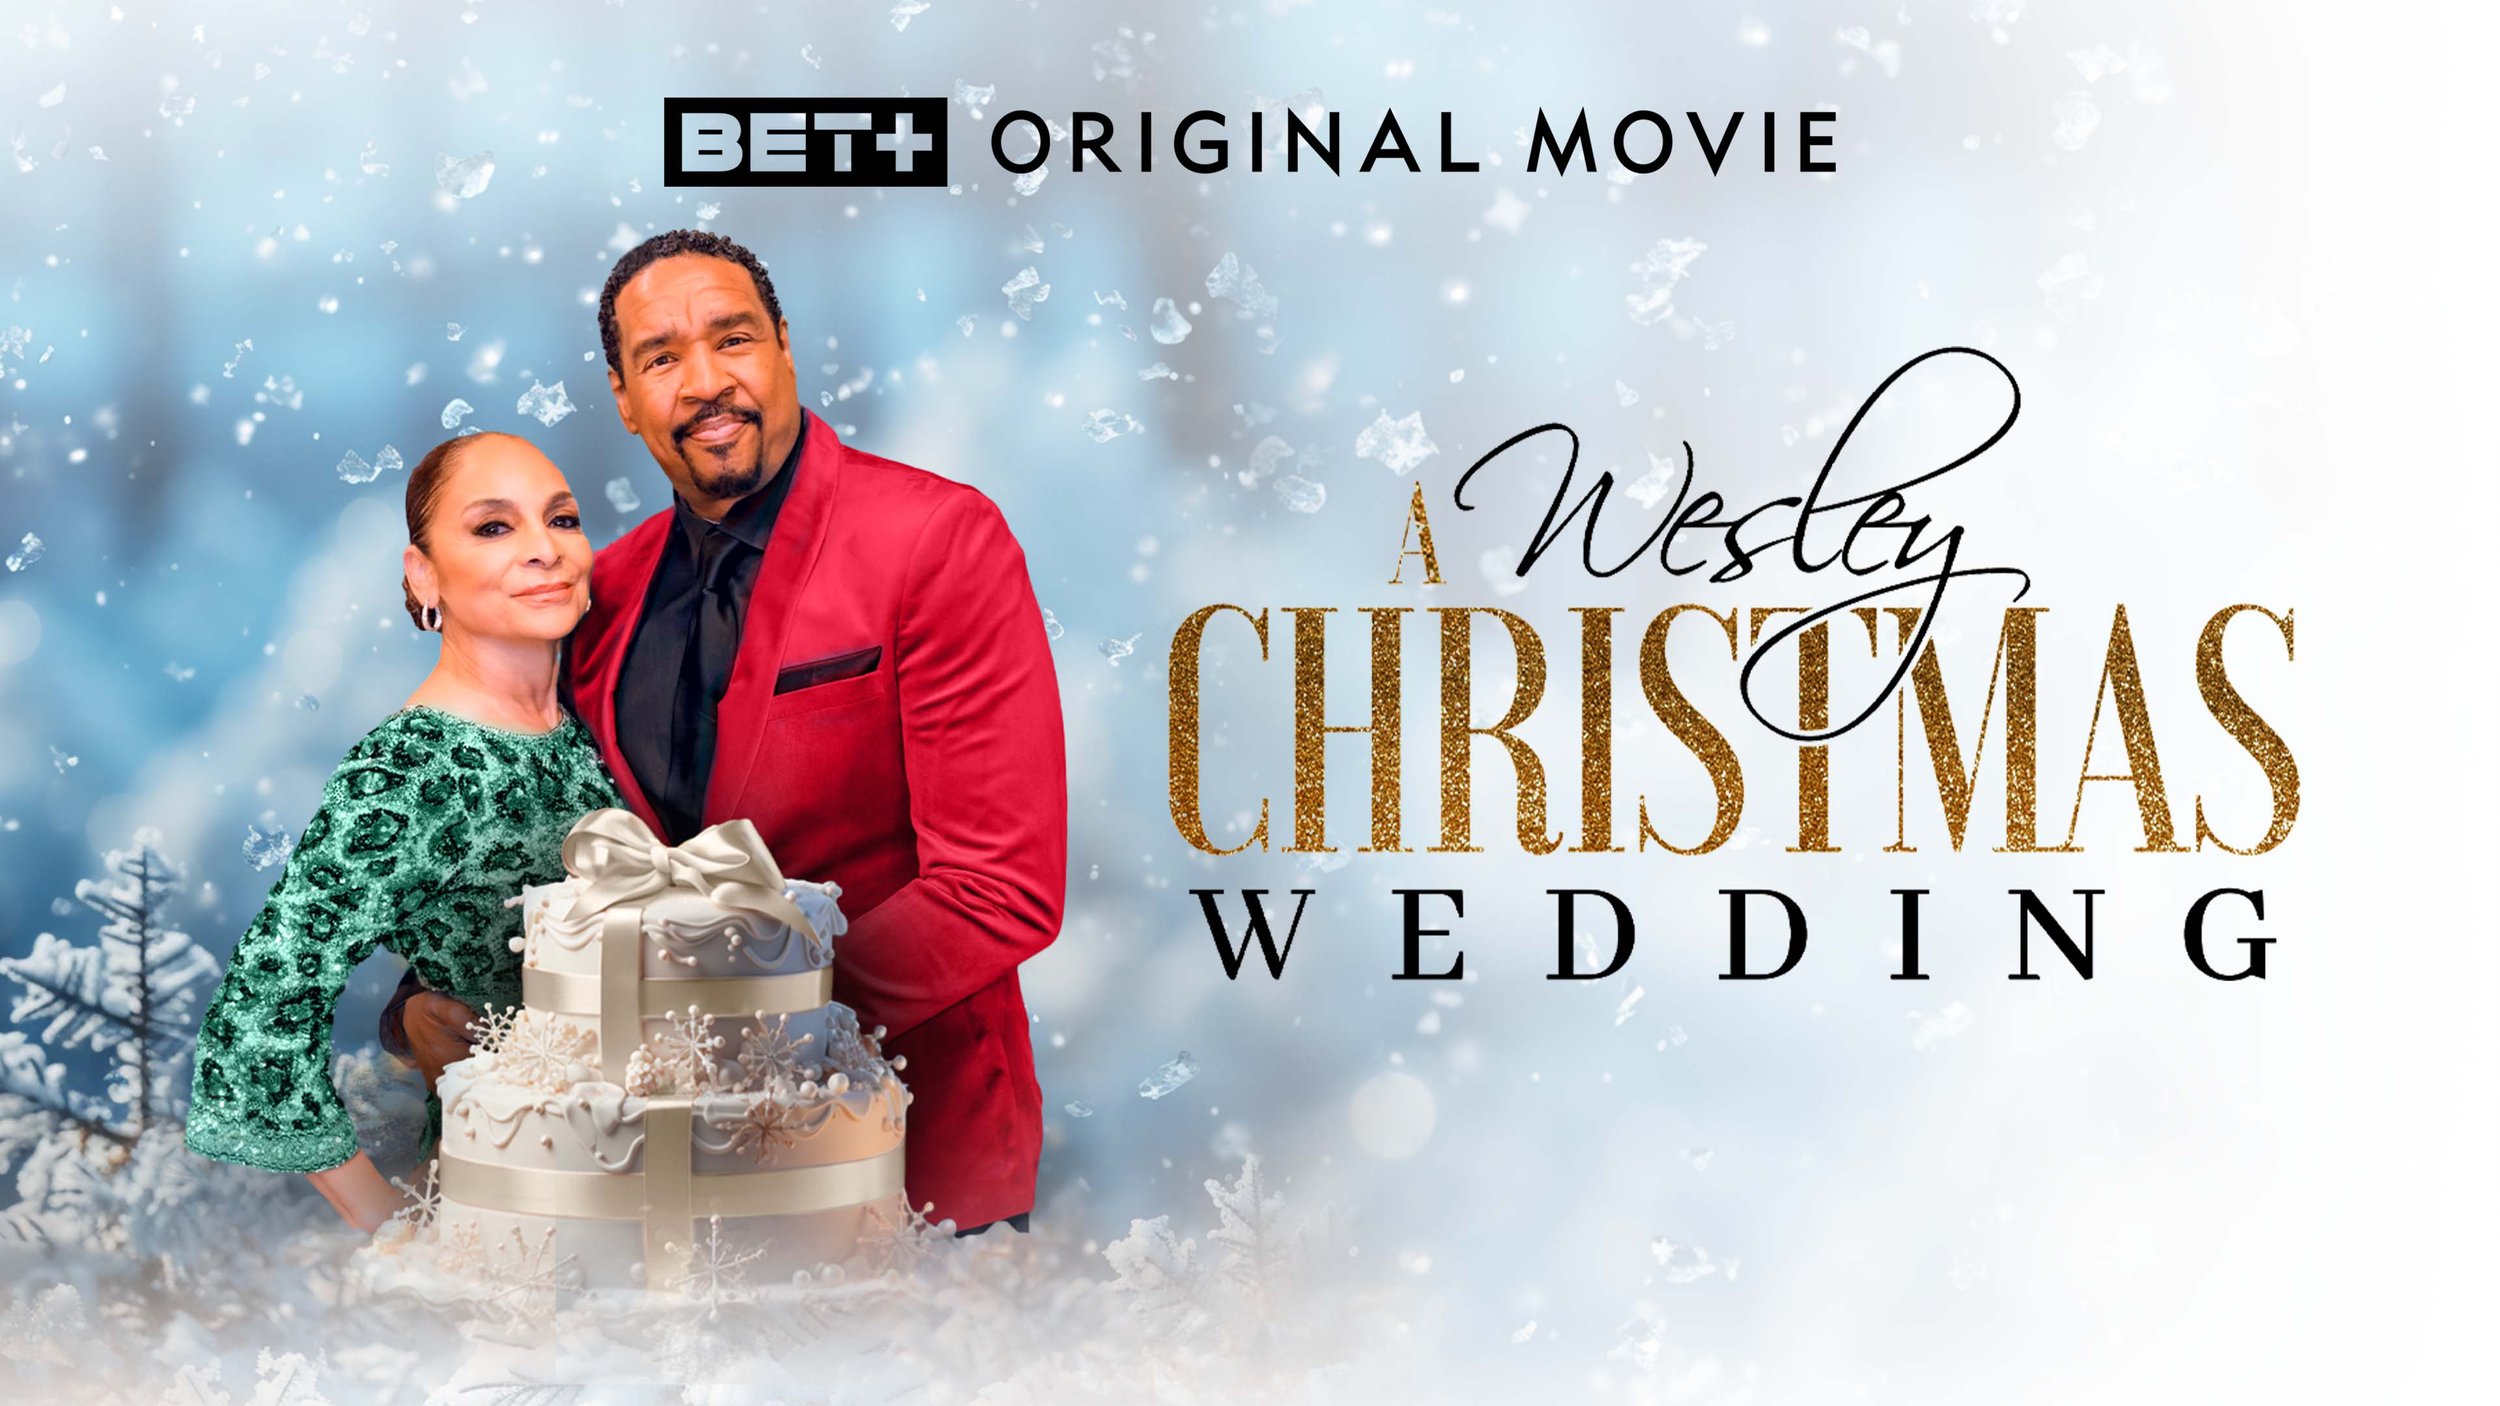 A Wesley Christmas: Wedding - BET+ Original